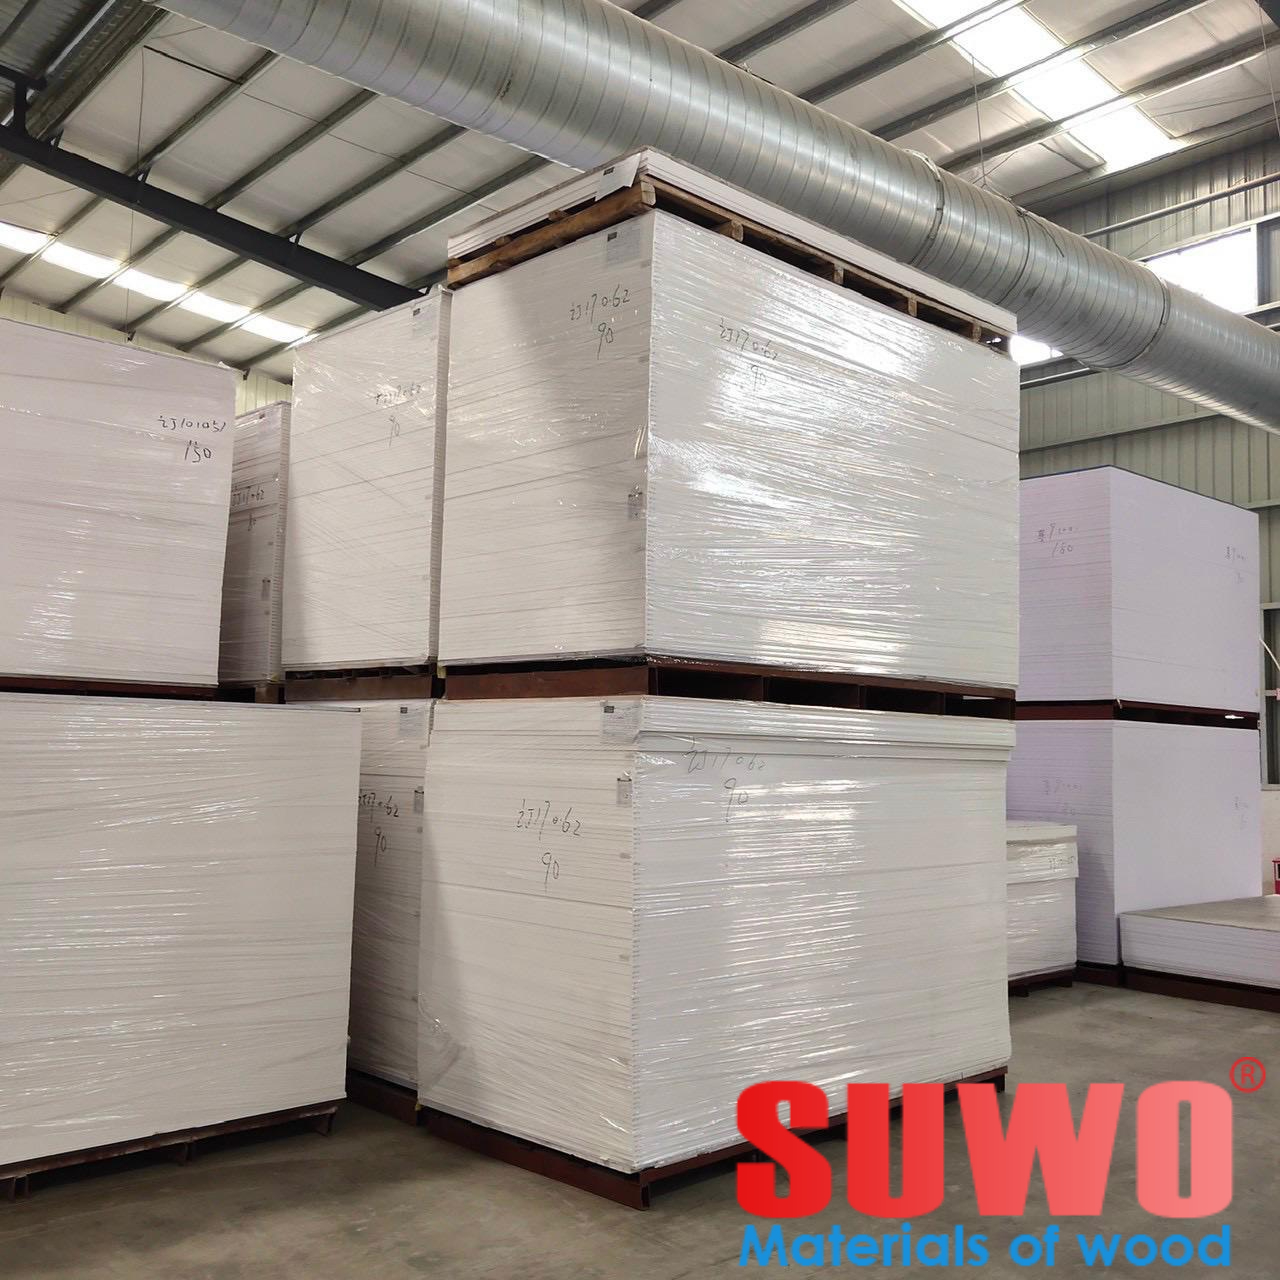 Ván nhựa PVC - Gỗ SUWO - Công Ty TNHH SUWO